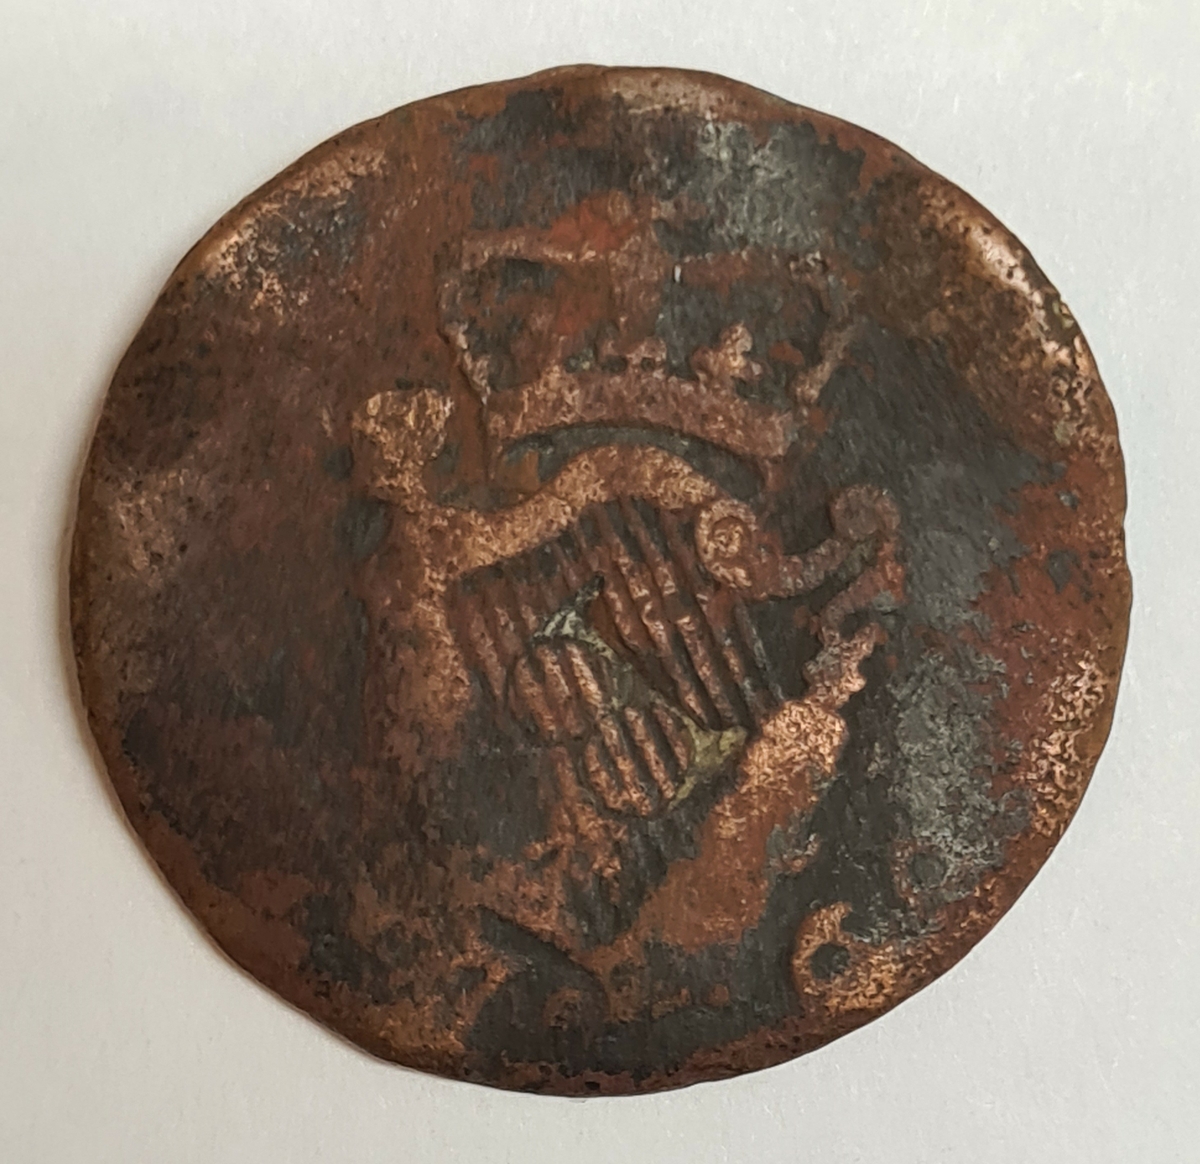 Två mynt från Storbritanien.
Penny, 1799
Penny, 176?